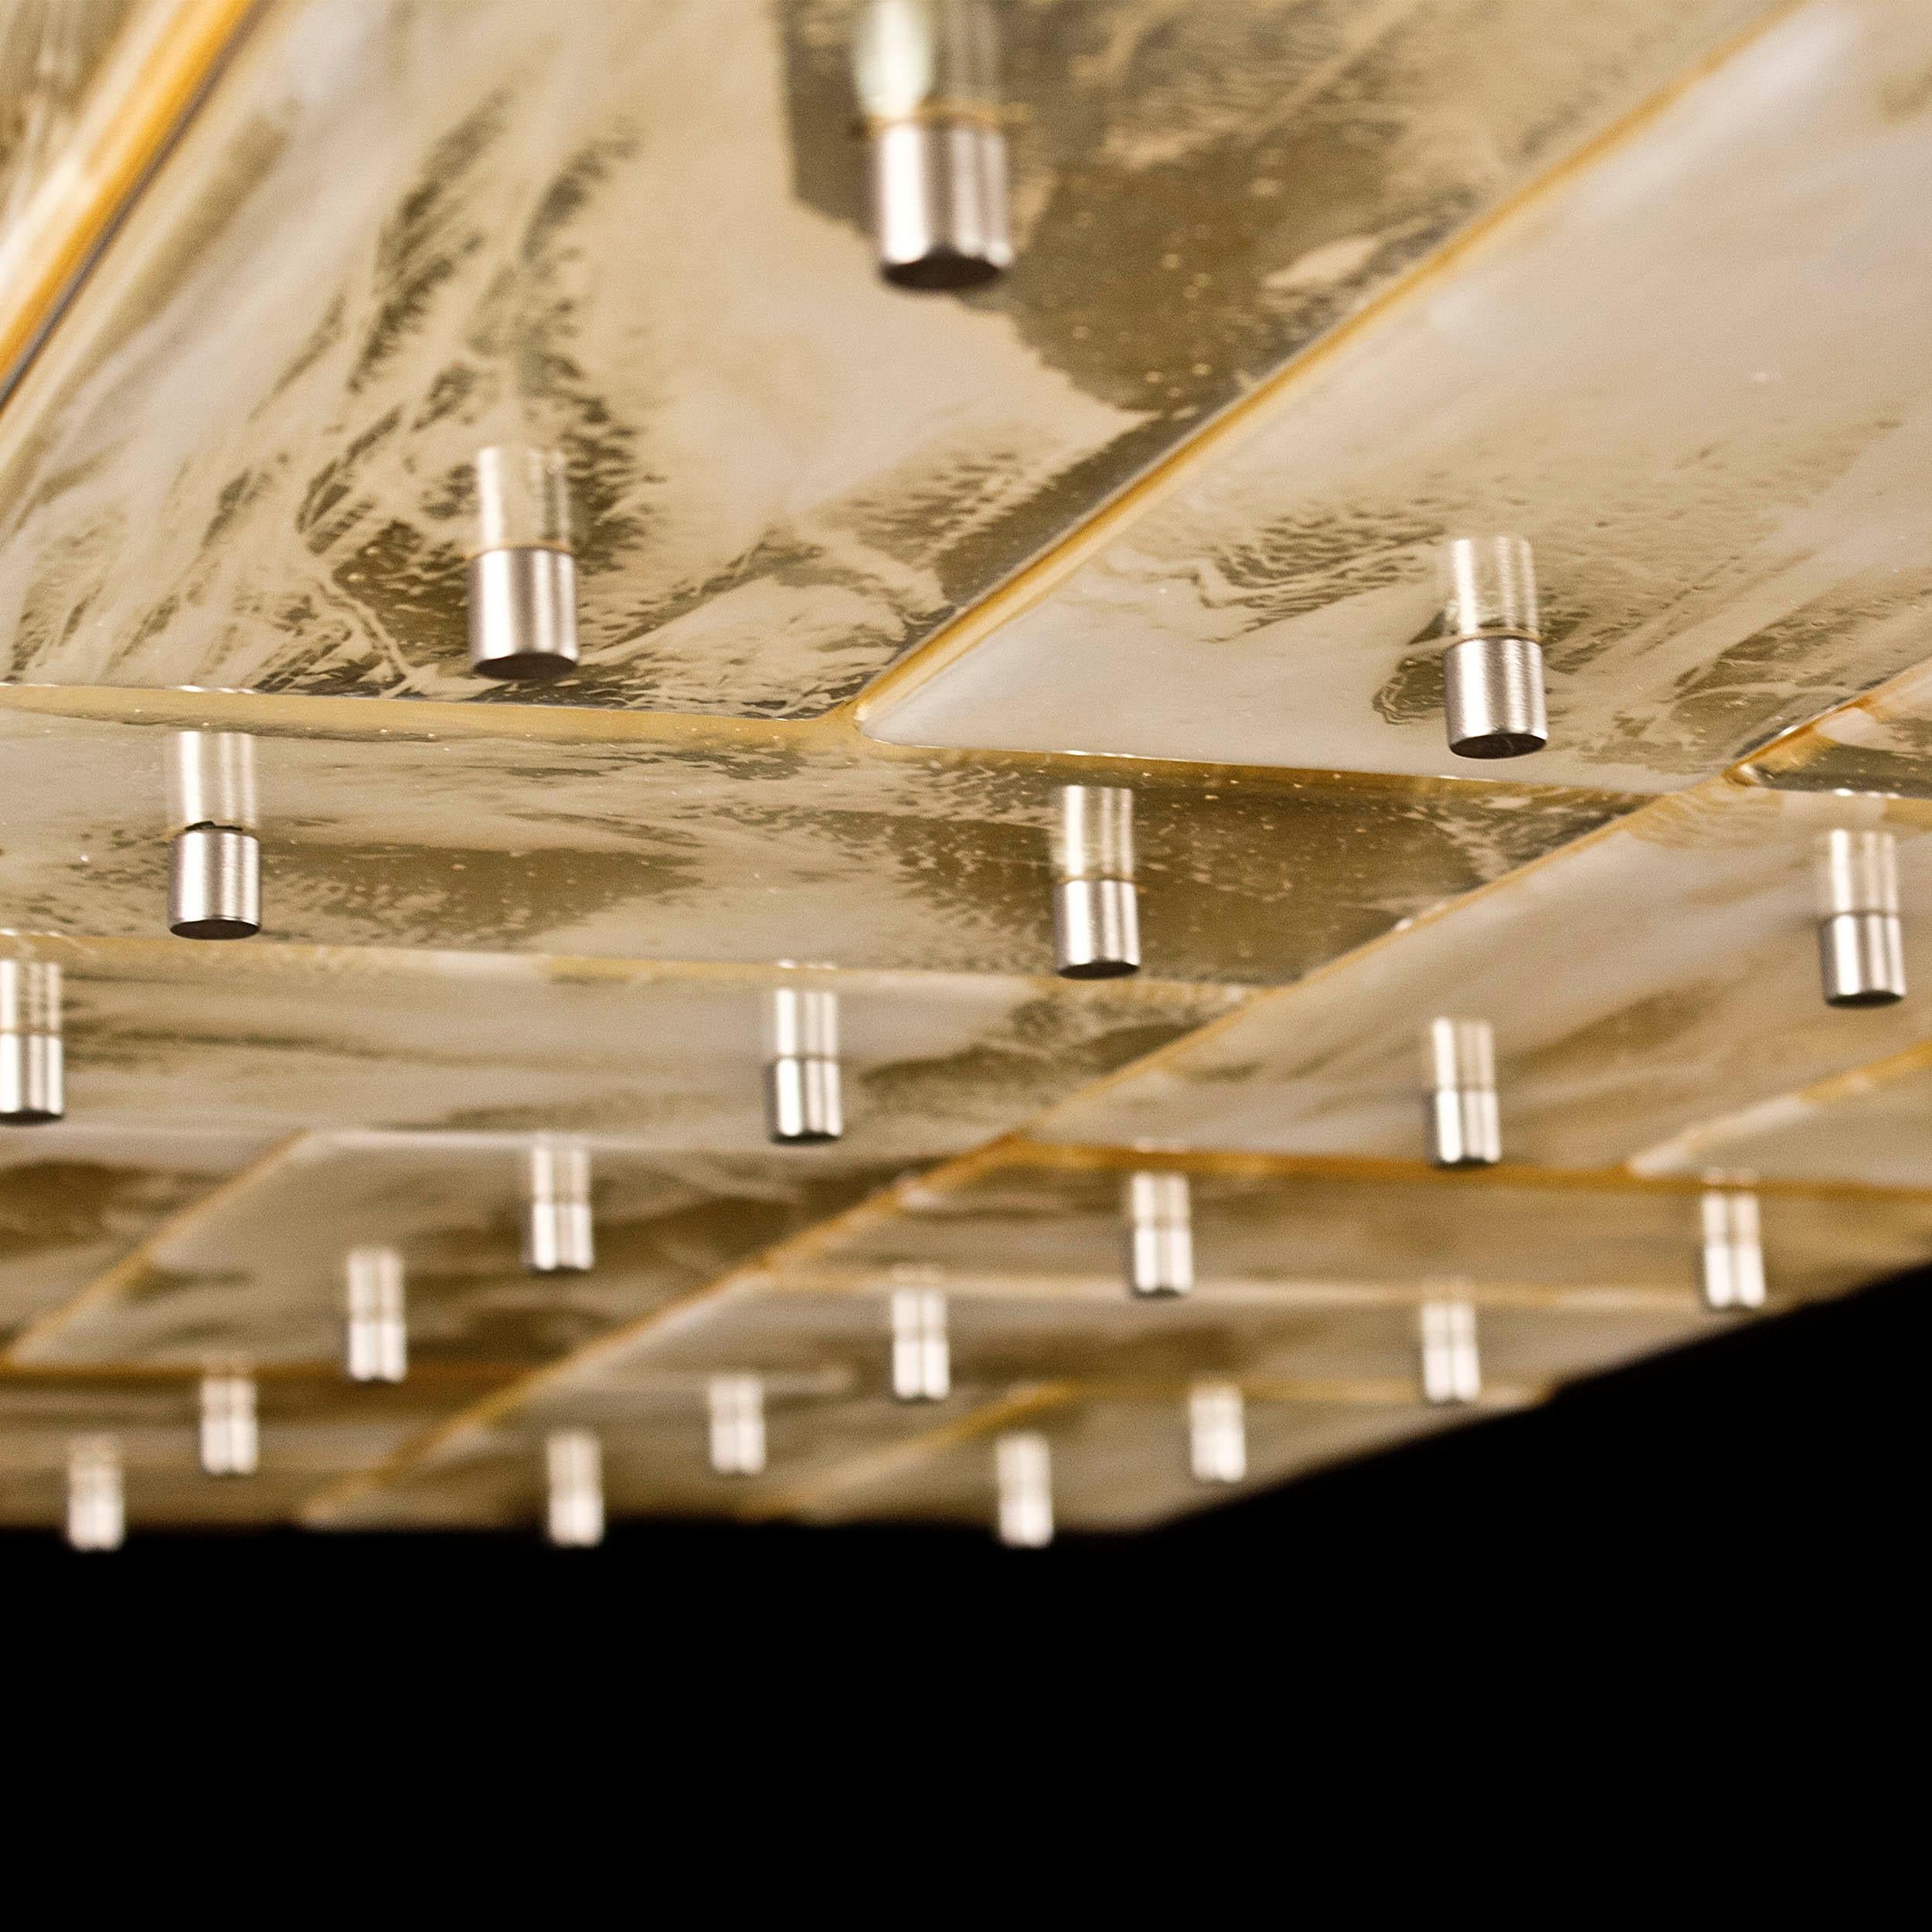 Le plafonnier Tilight exalte la qualité des plaques de verre. La plaque de verre est largement utilisée dans le secteur de l'éclairage, mais elle n'est pas souvent utilisée dans la fabrication de lustres personnalisés et décoratifs.
Multiforme,